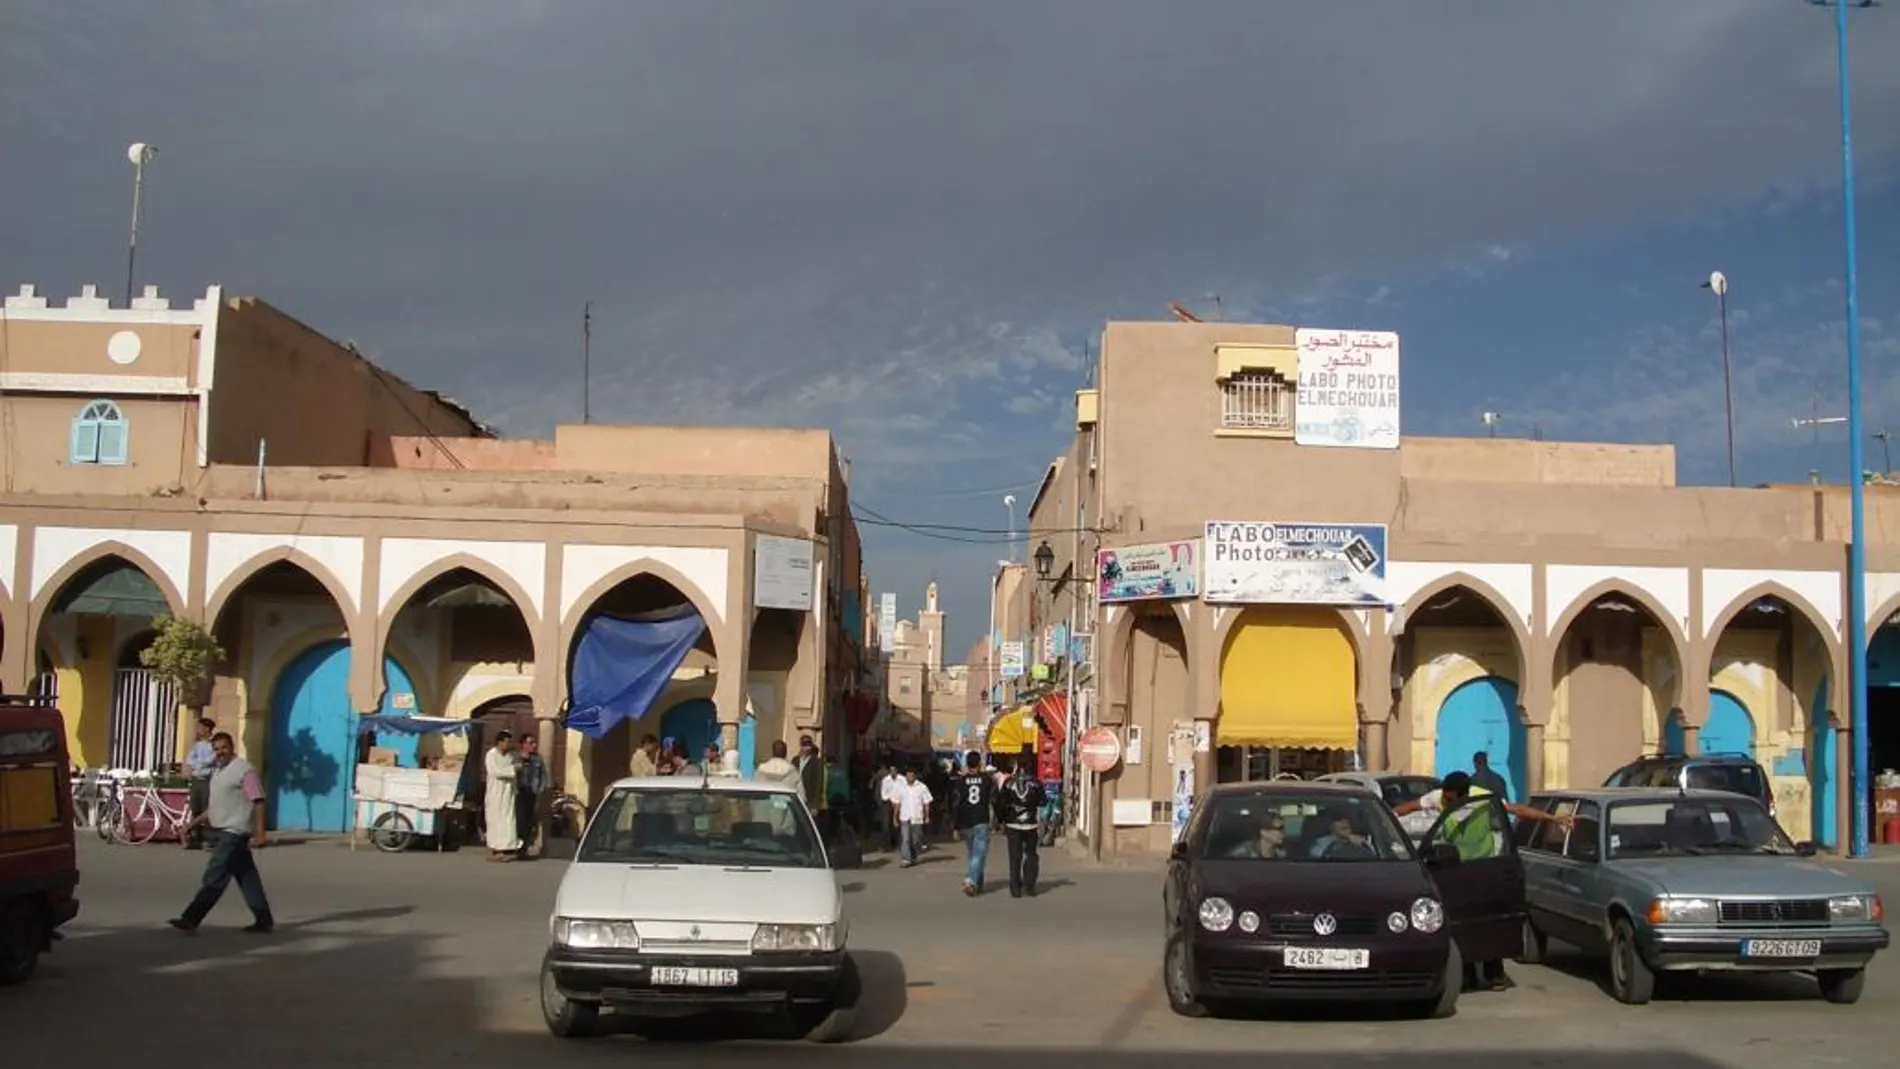 El suceso ocurrió en la ciudad de Tiznit, al sur de Marruecos